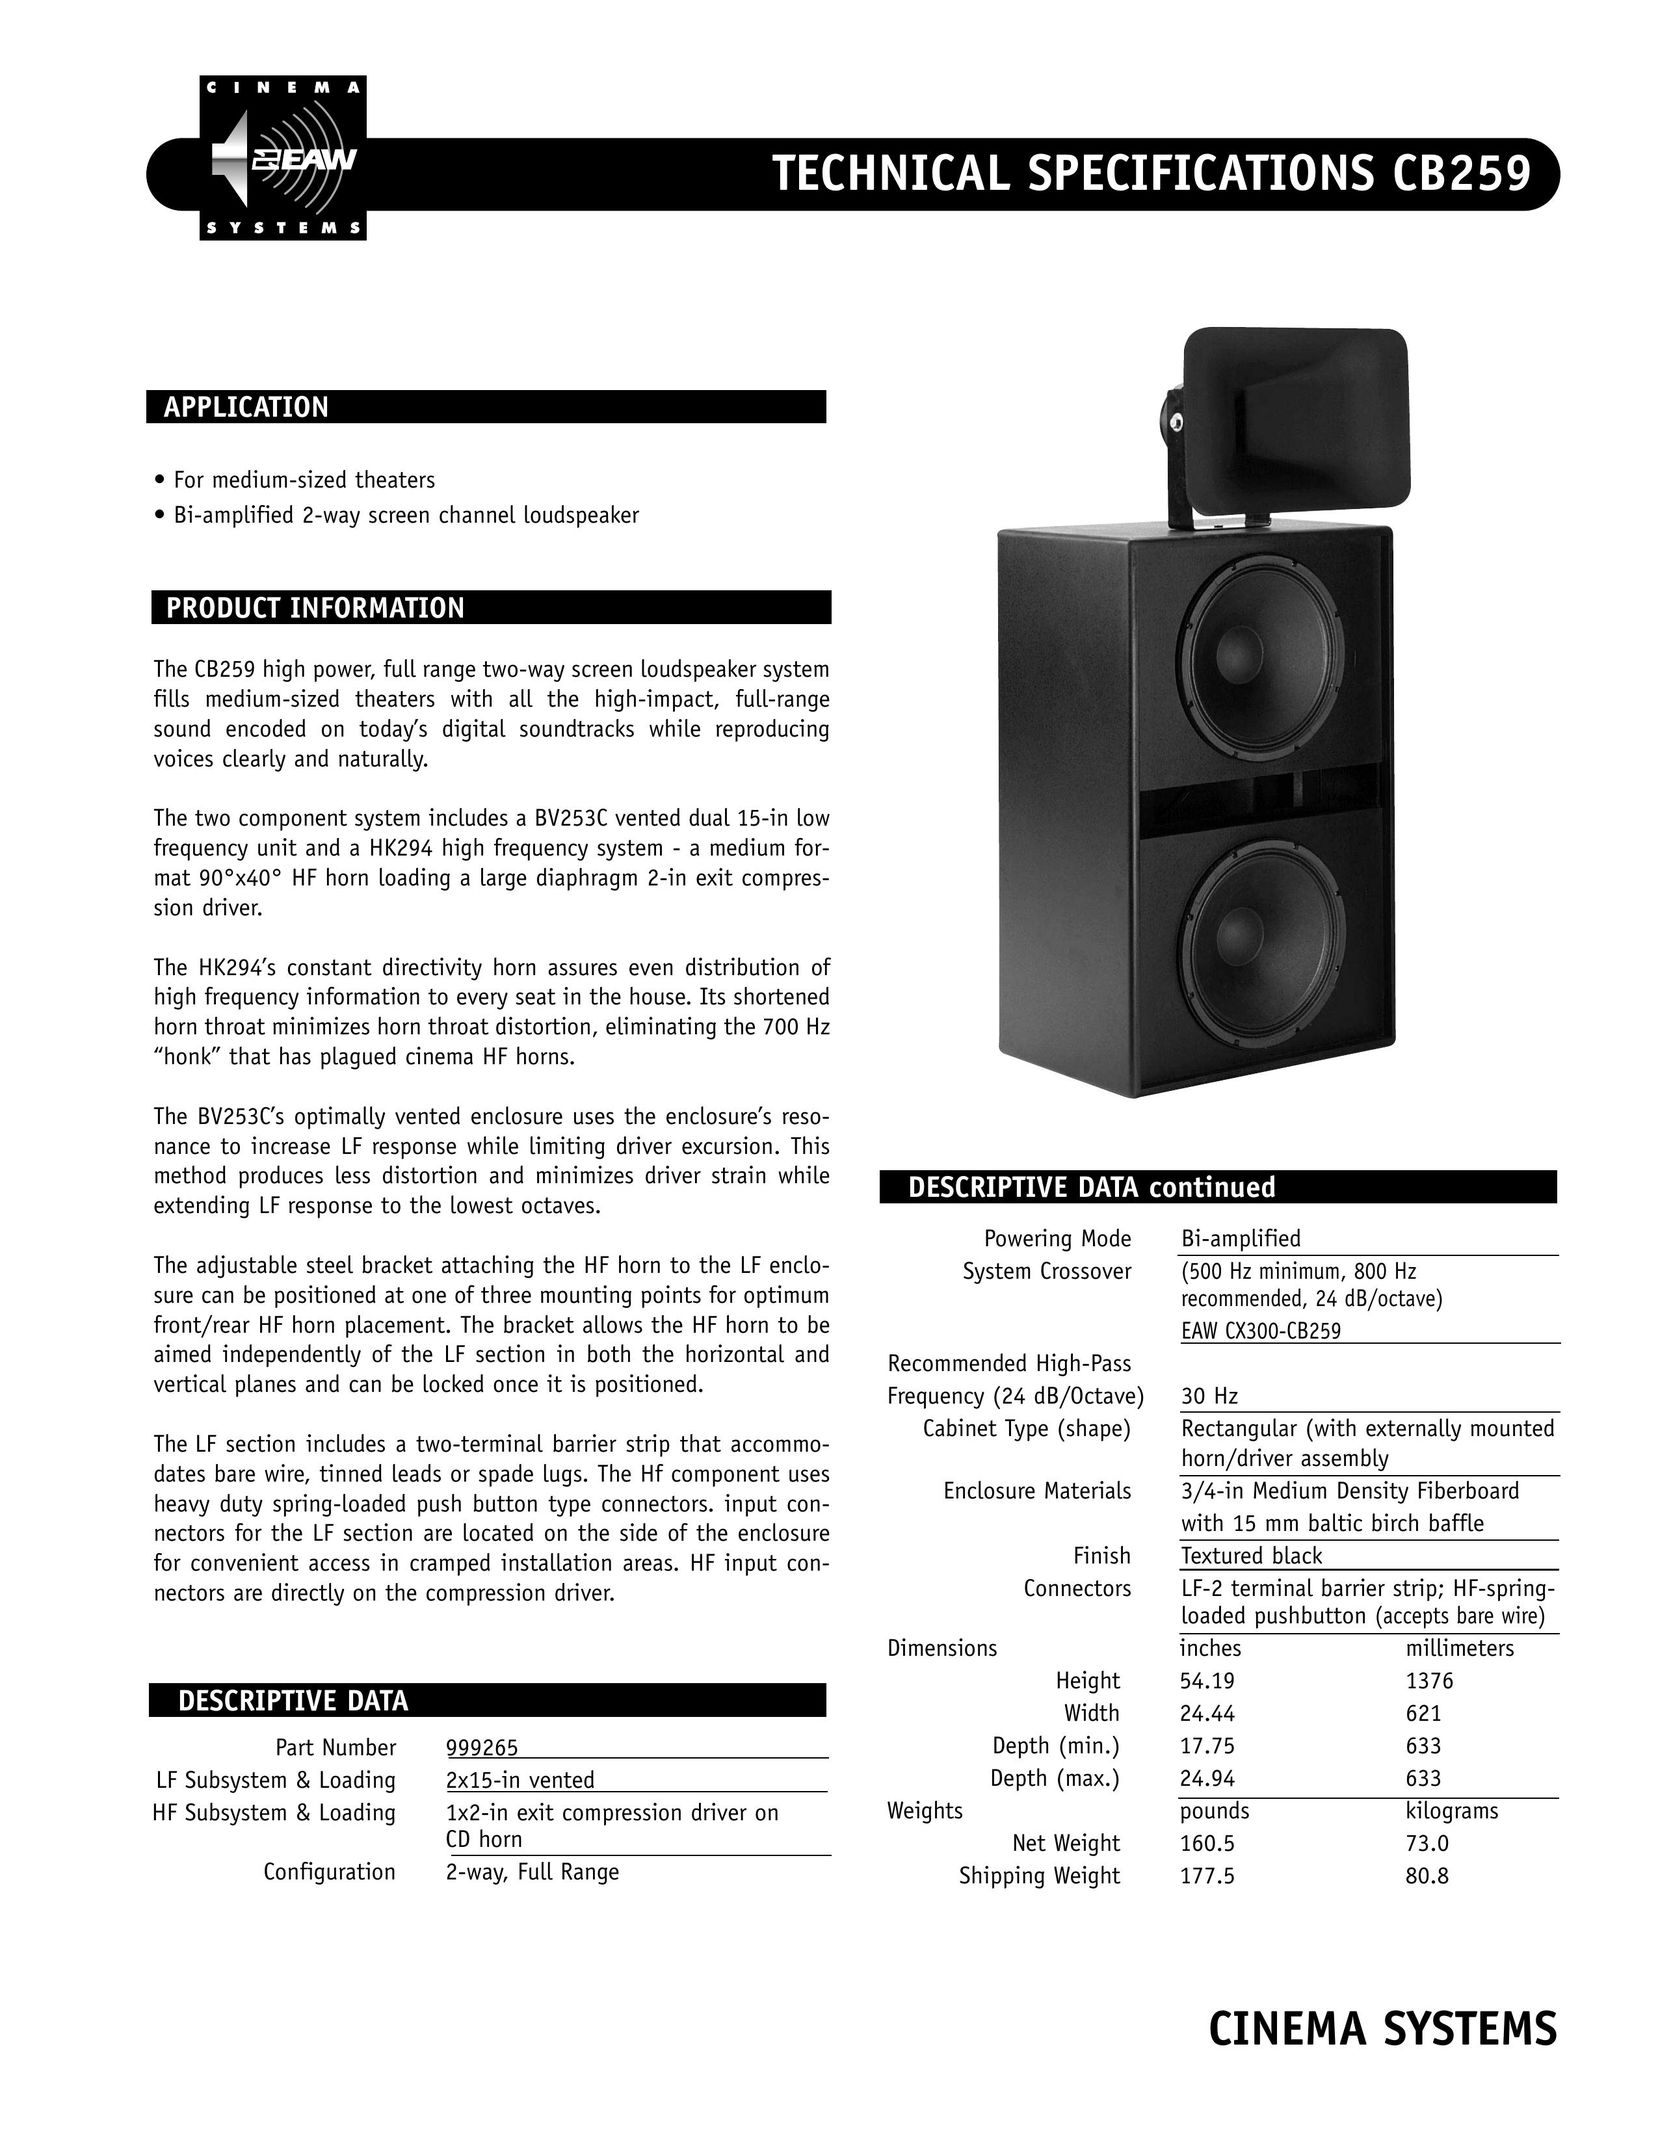 EAW CB259 Speaker User Manual